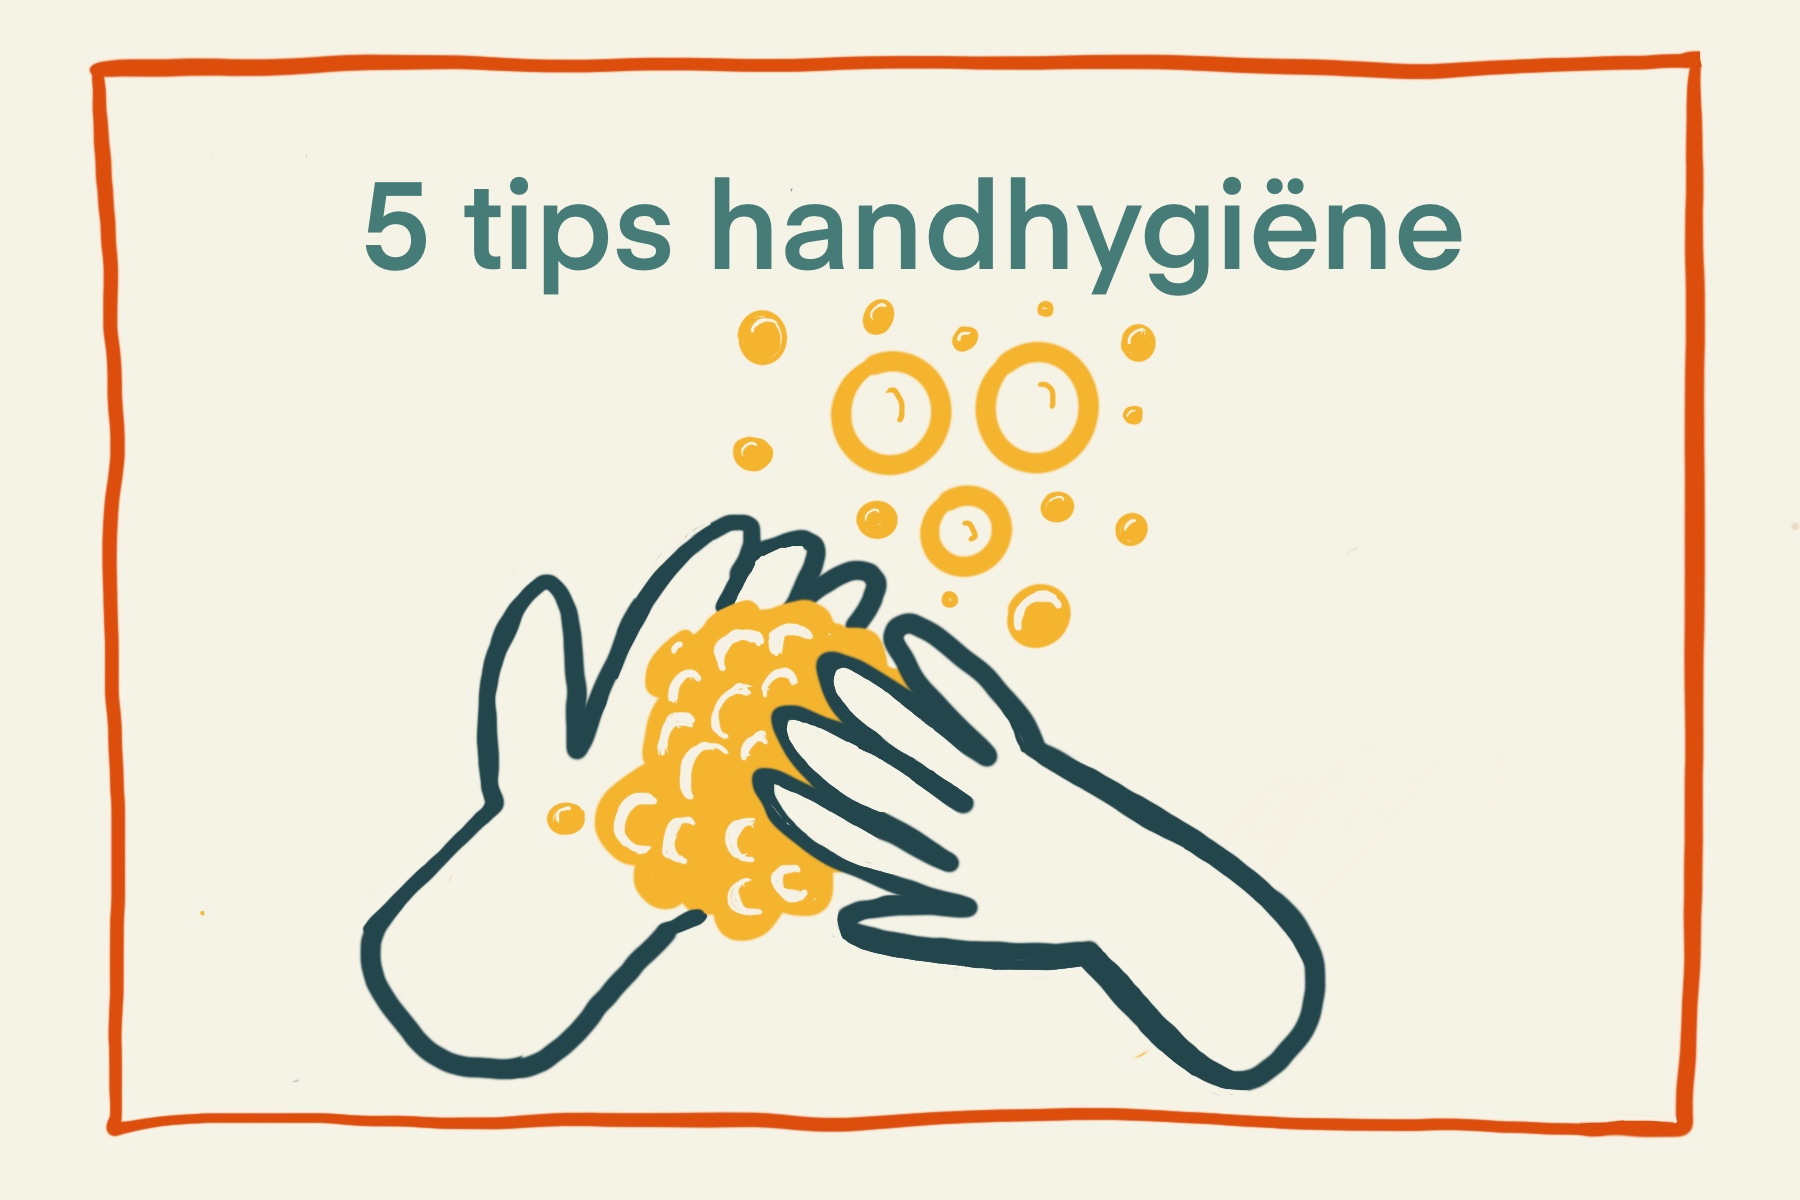 5 tips handhygiene